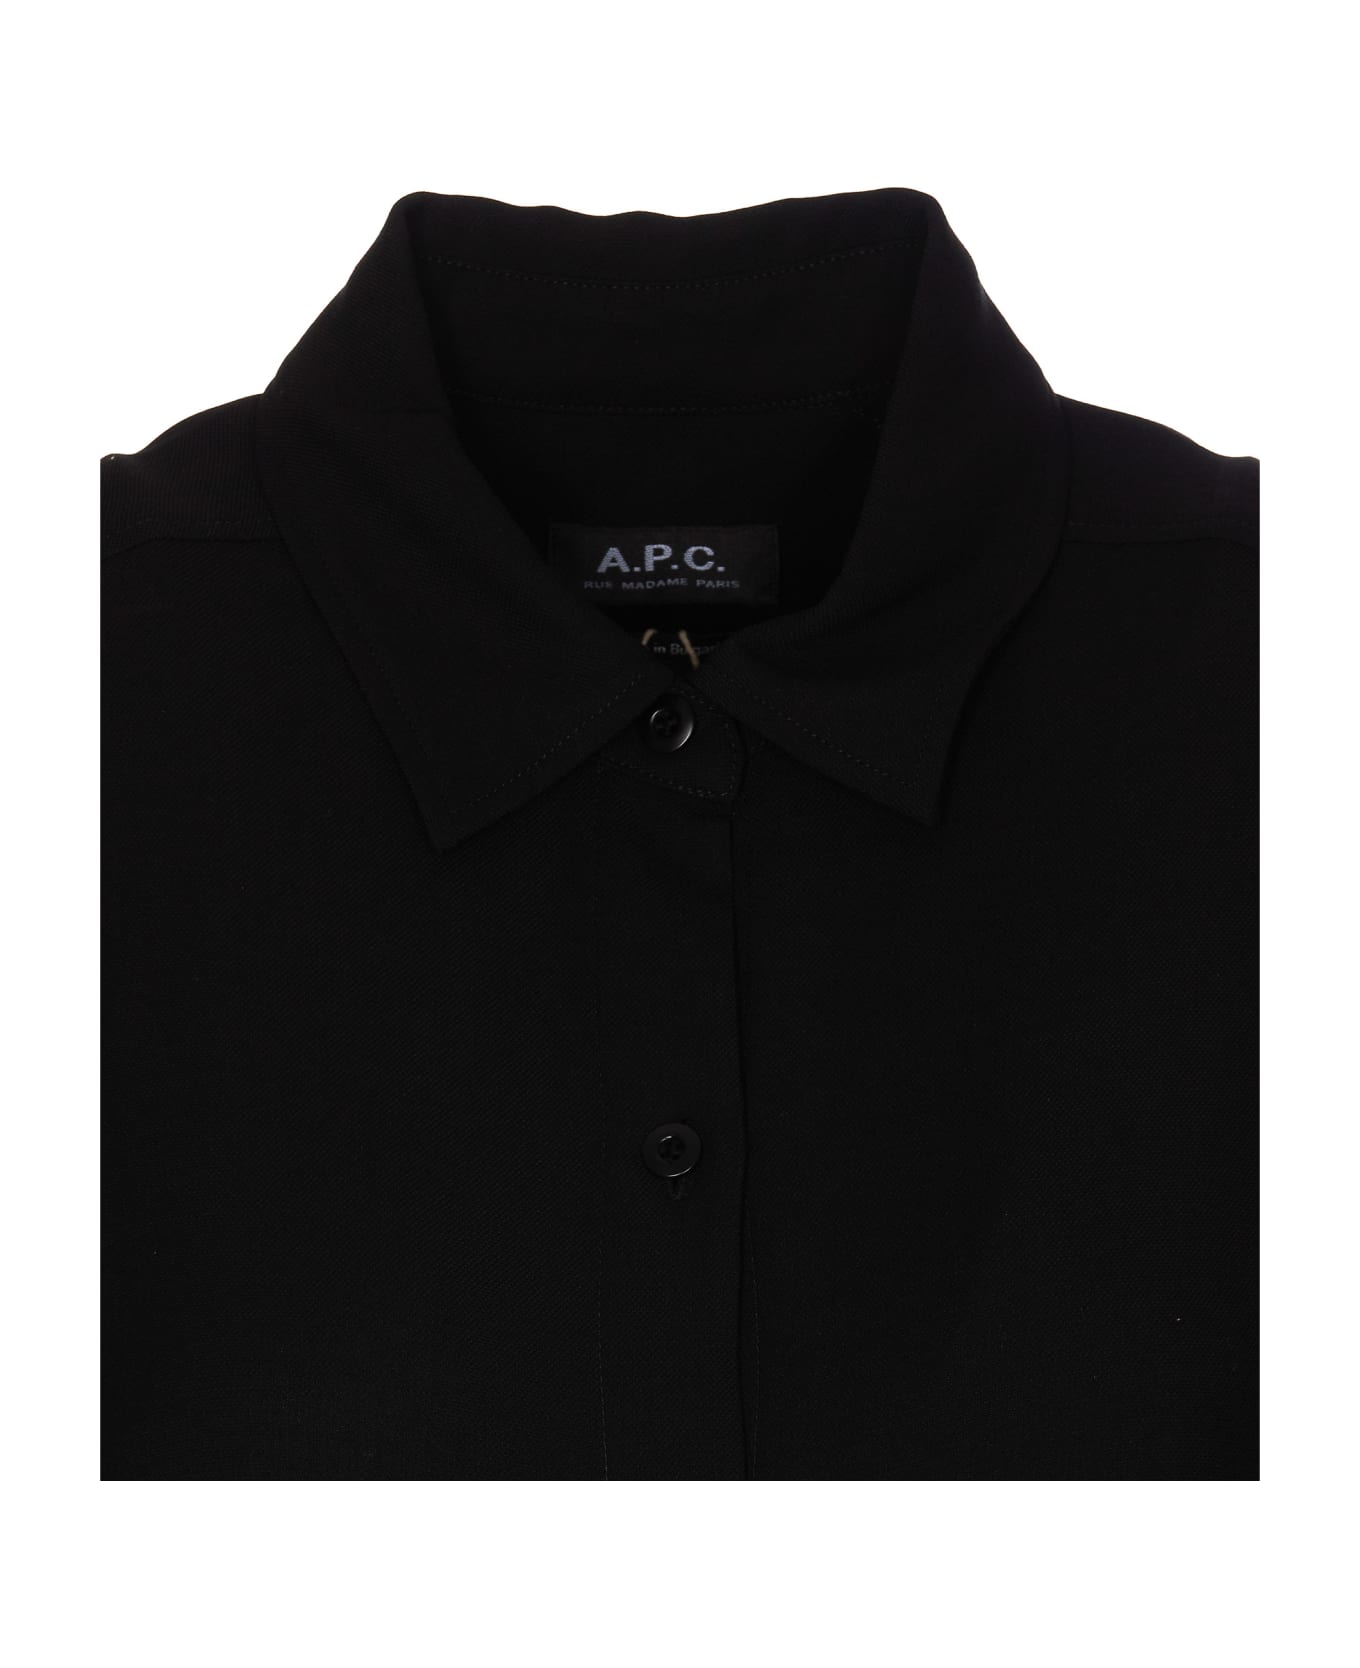 A.P.C. Belted Waist Buttoned Shirt Dress - Black